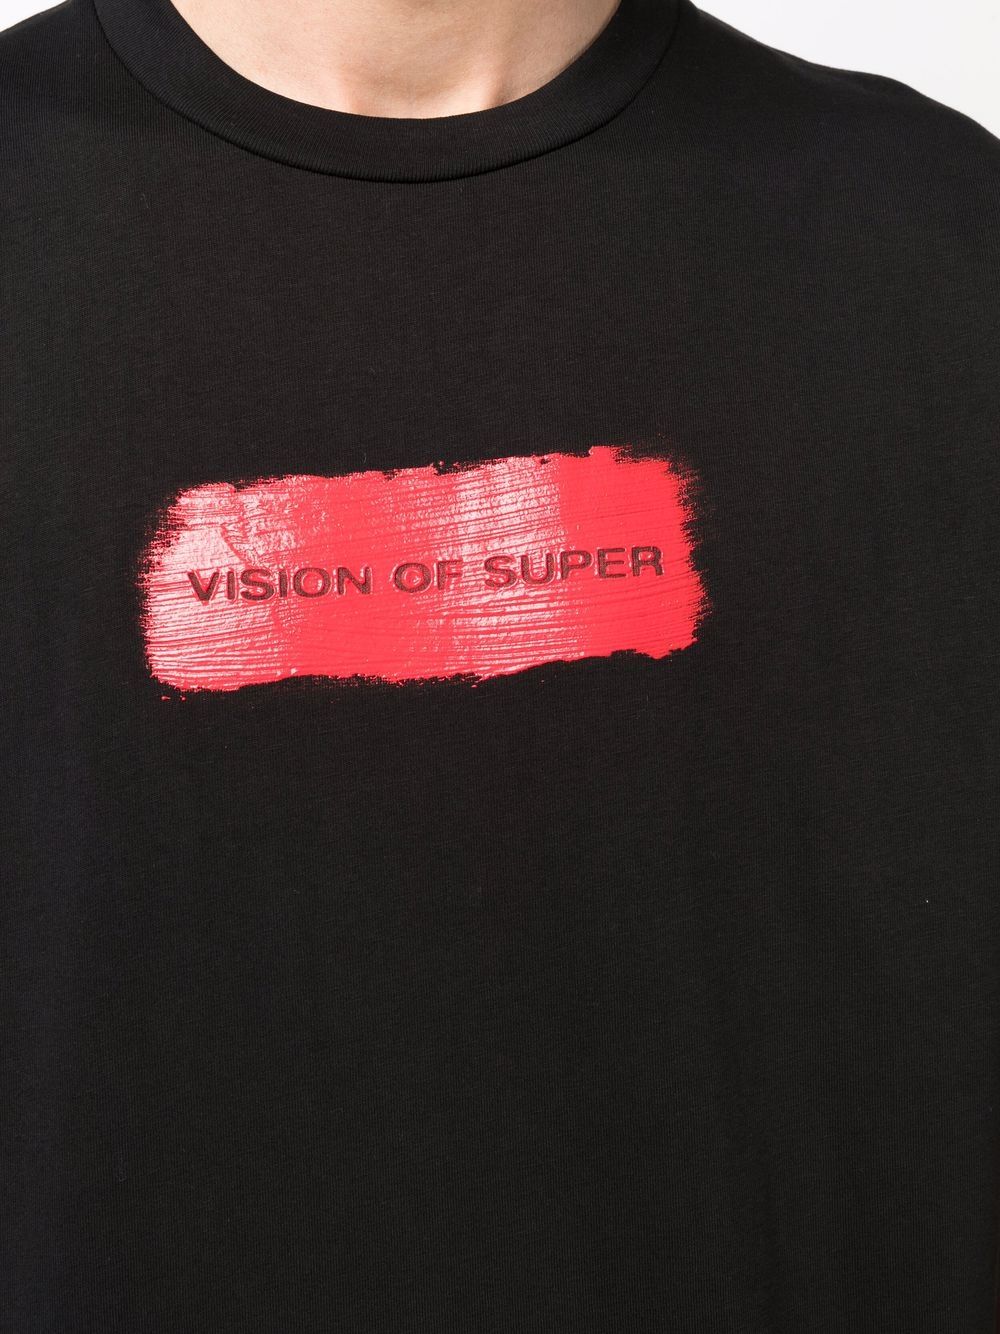 фото Vision of super футболка с логотипом